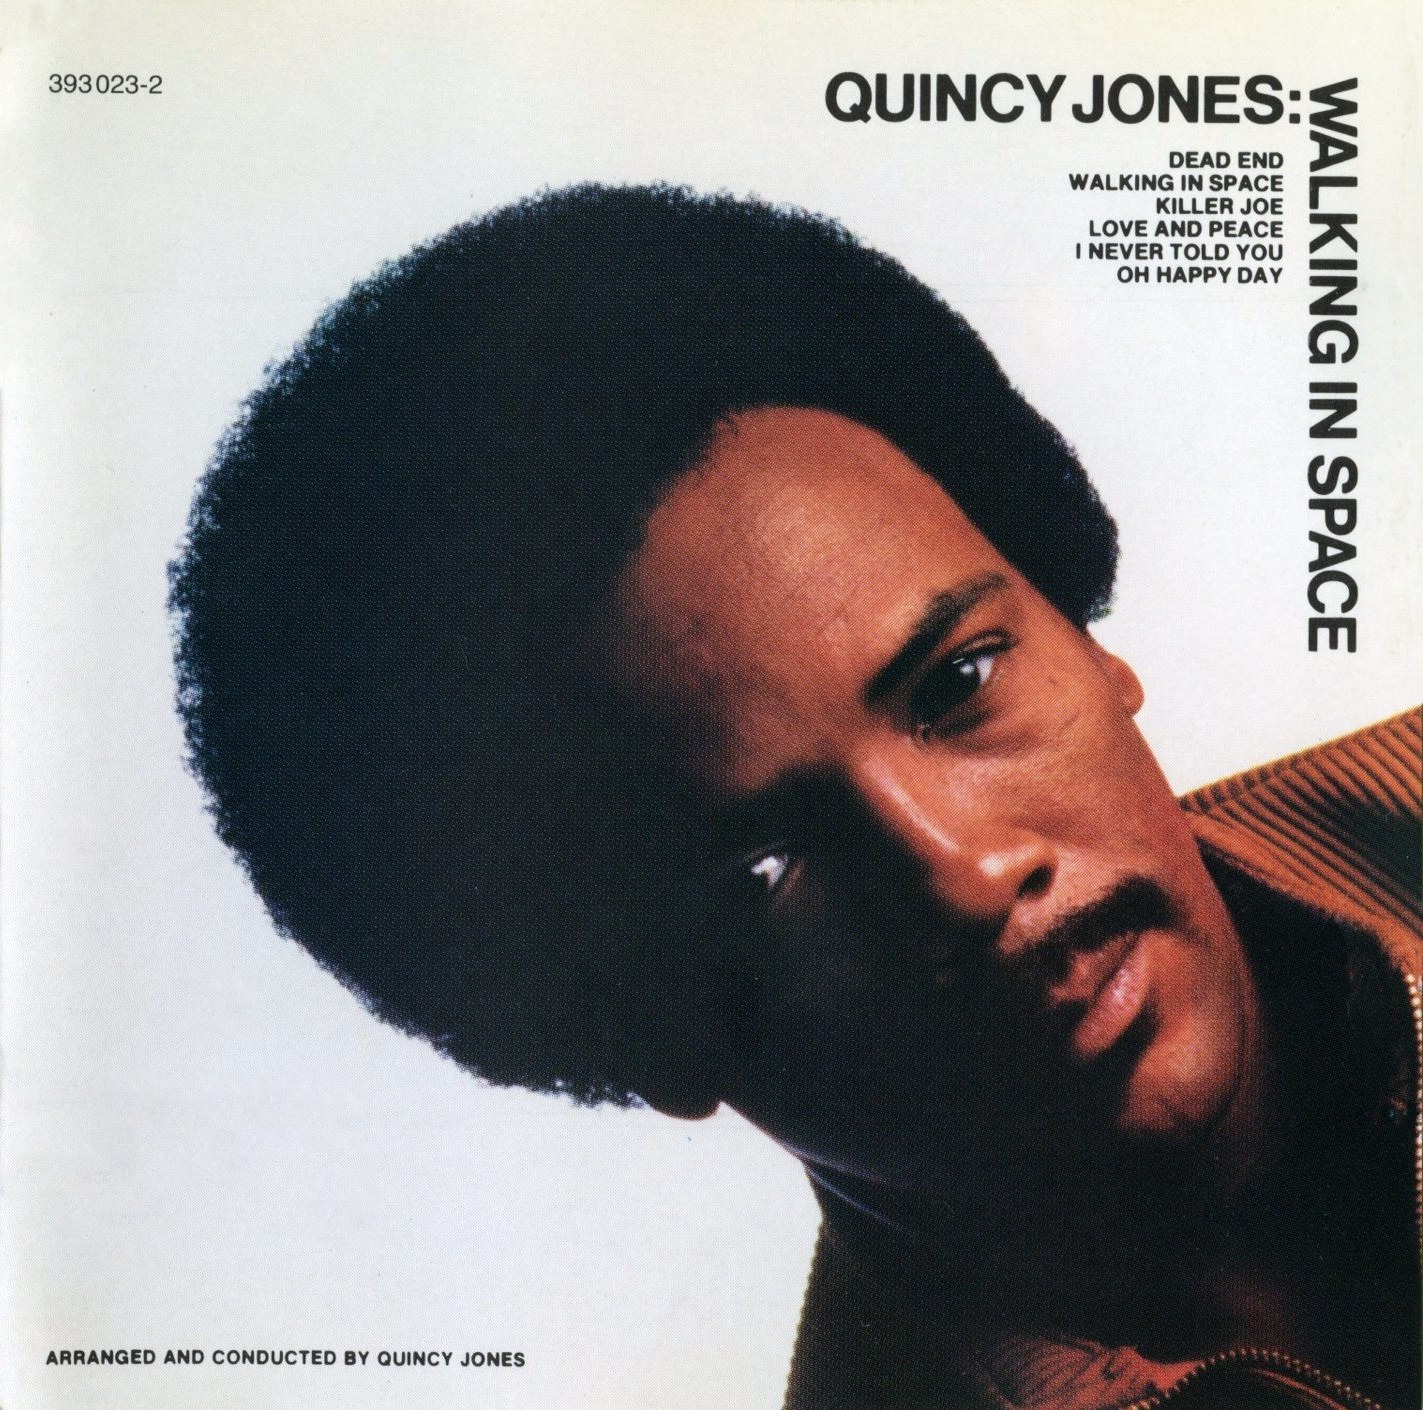 Quincy Jones - Walking in space (1969)